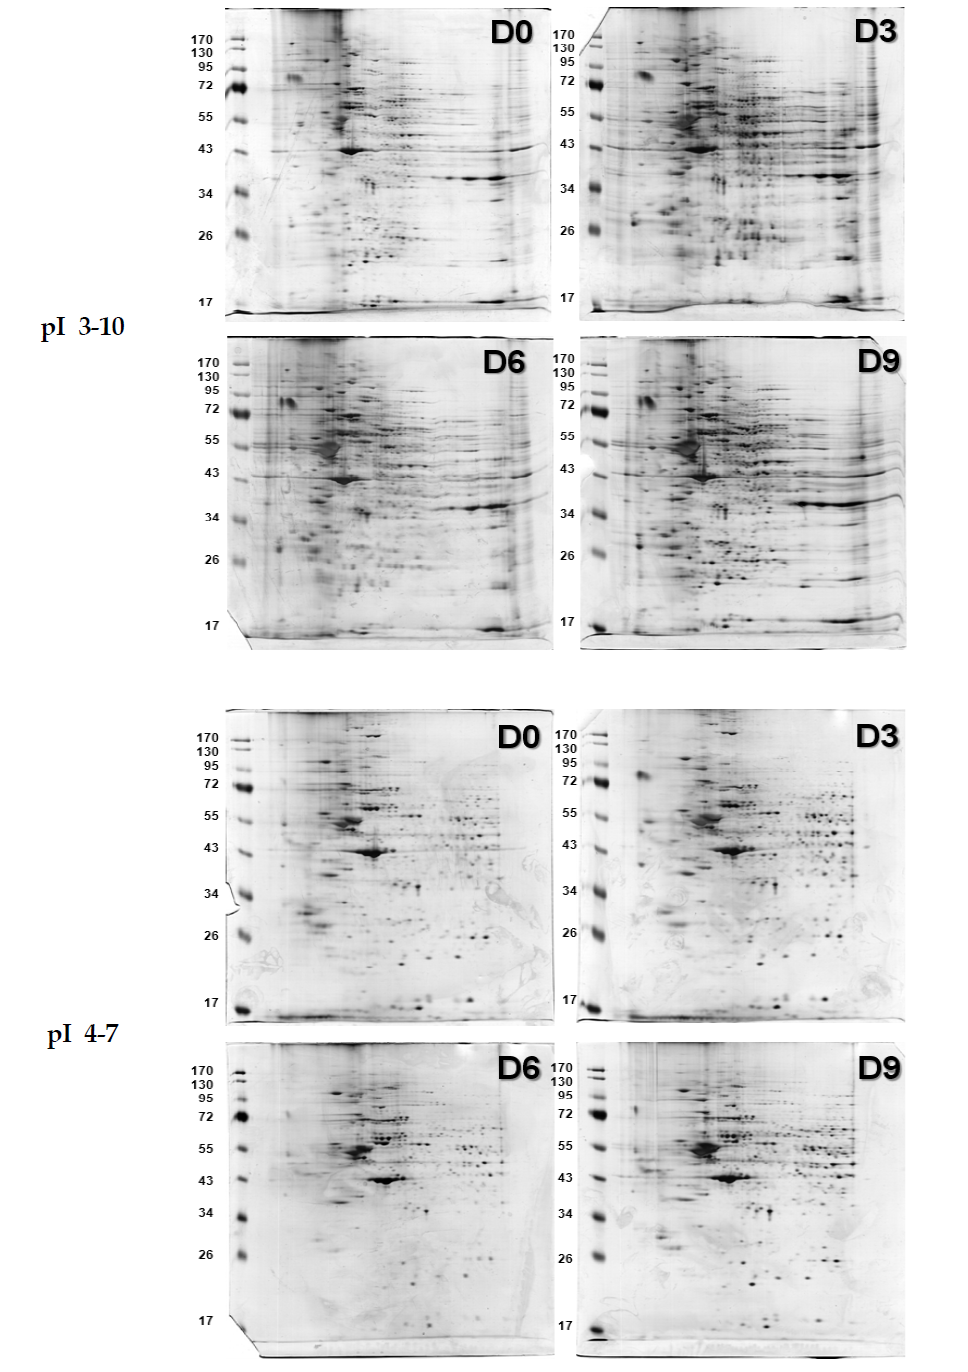 분화 과정에 있는 F6 Cell Line으로부터 얻은 Soluble Proteome의 변화양상 (Day 0 에서부터 Day 9까지 3일 간격으로 분석). 250 μg 단백질 사용, 13cm, 12% SDS-PAGE. pI 3-10 (위) & pI 4-7 (아래)